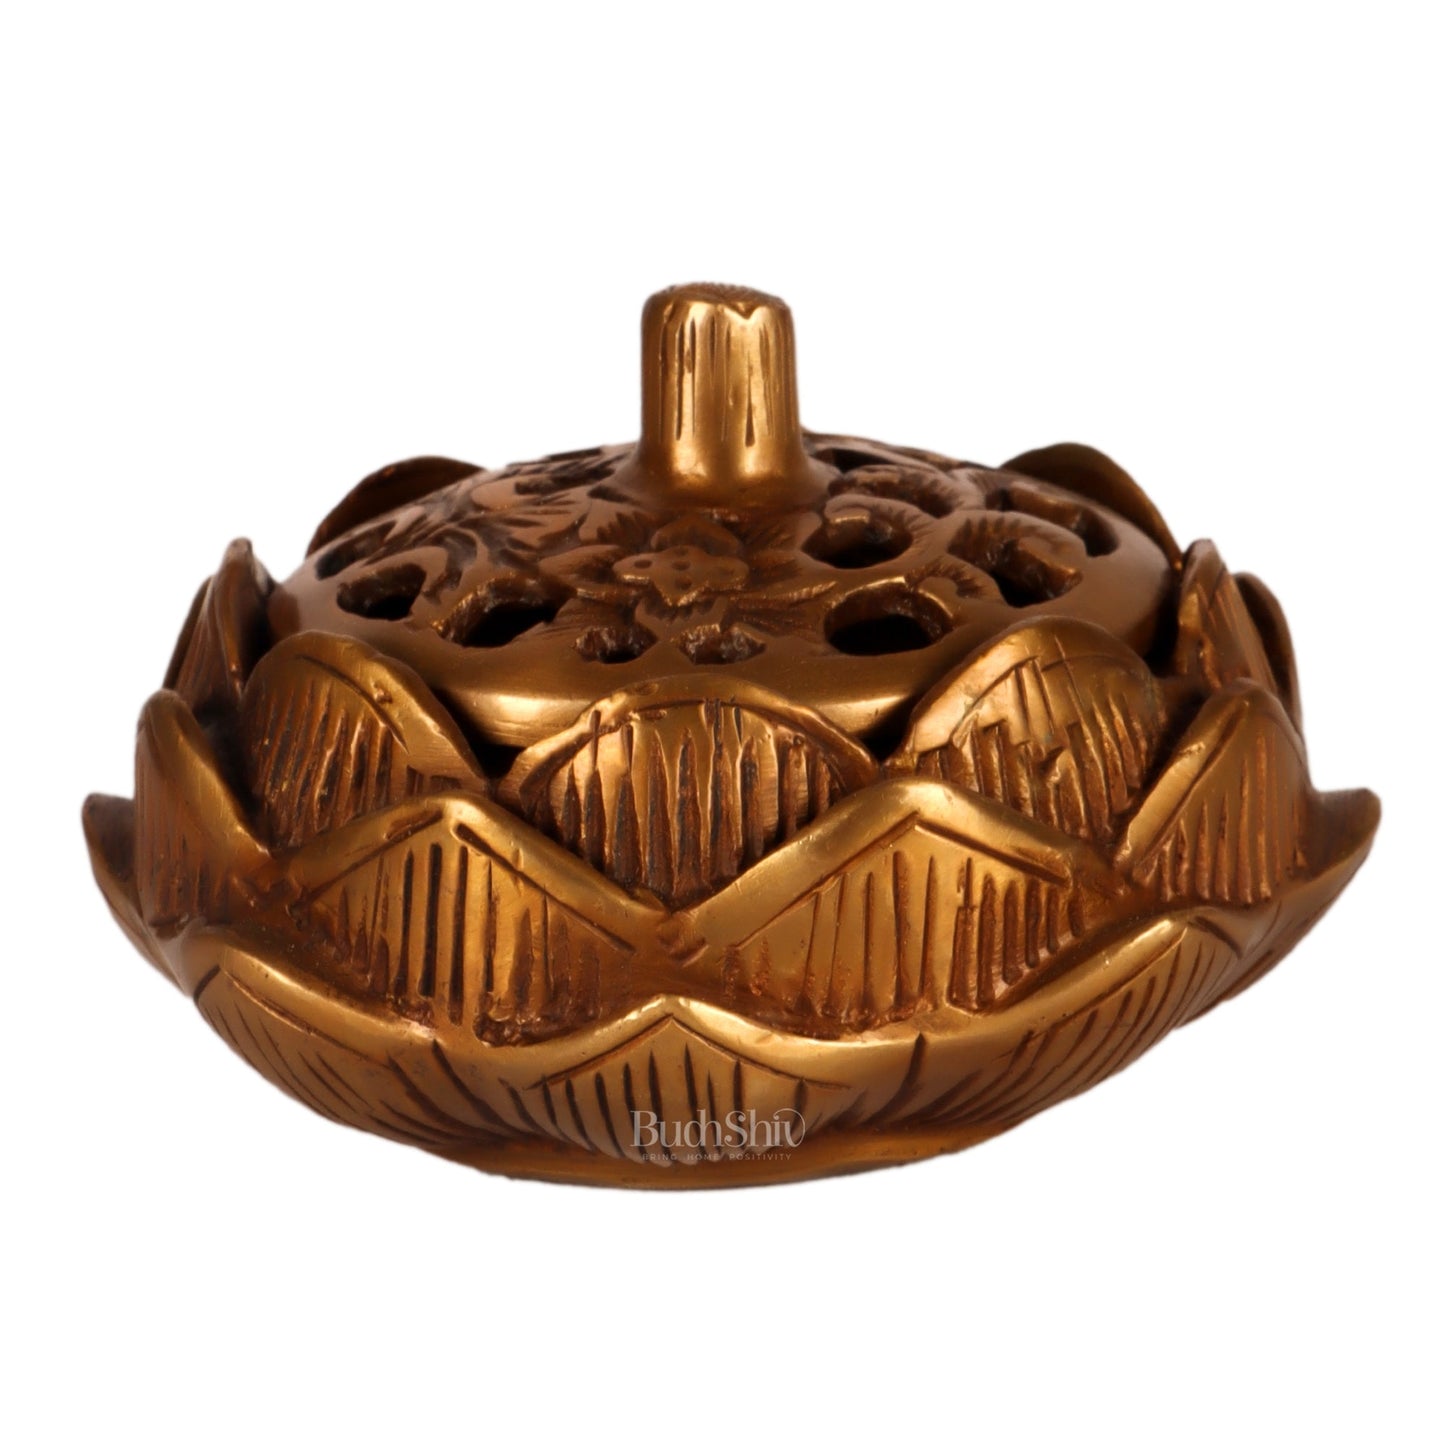 Brass Handcrafted Lotus Design Dhoop Burner | Incense Burner for Home Purification - Budhshiv.com